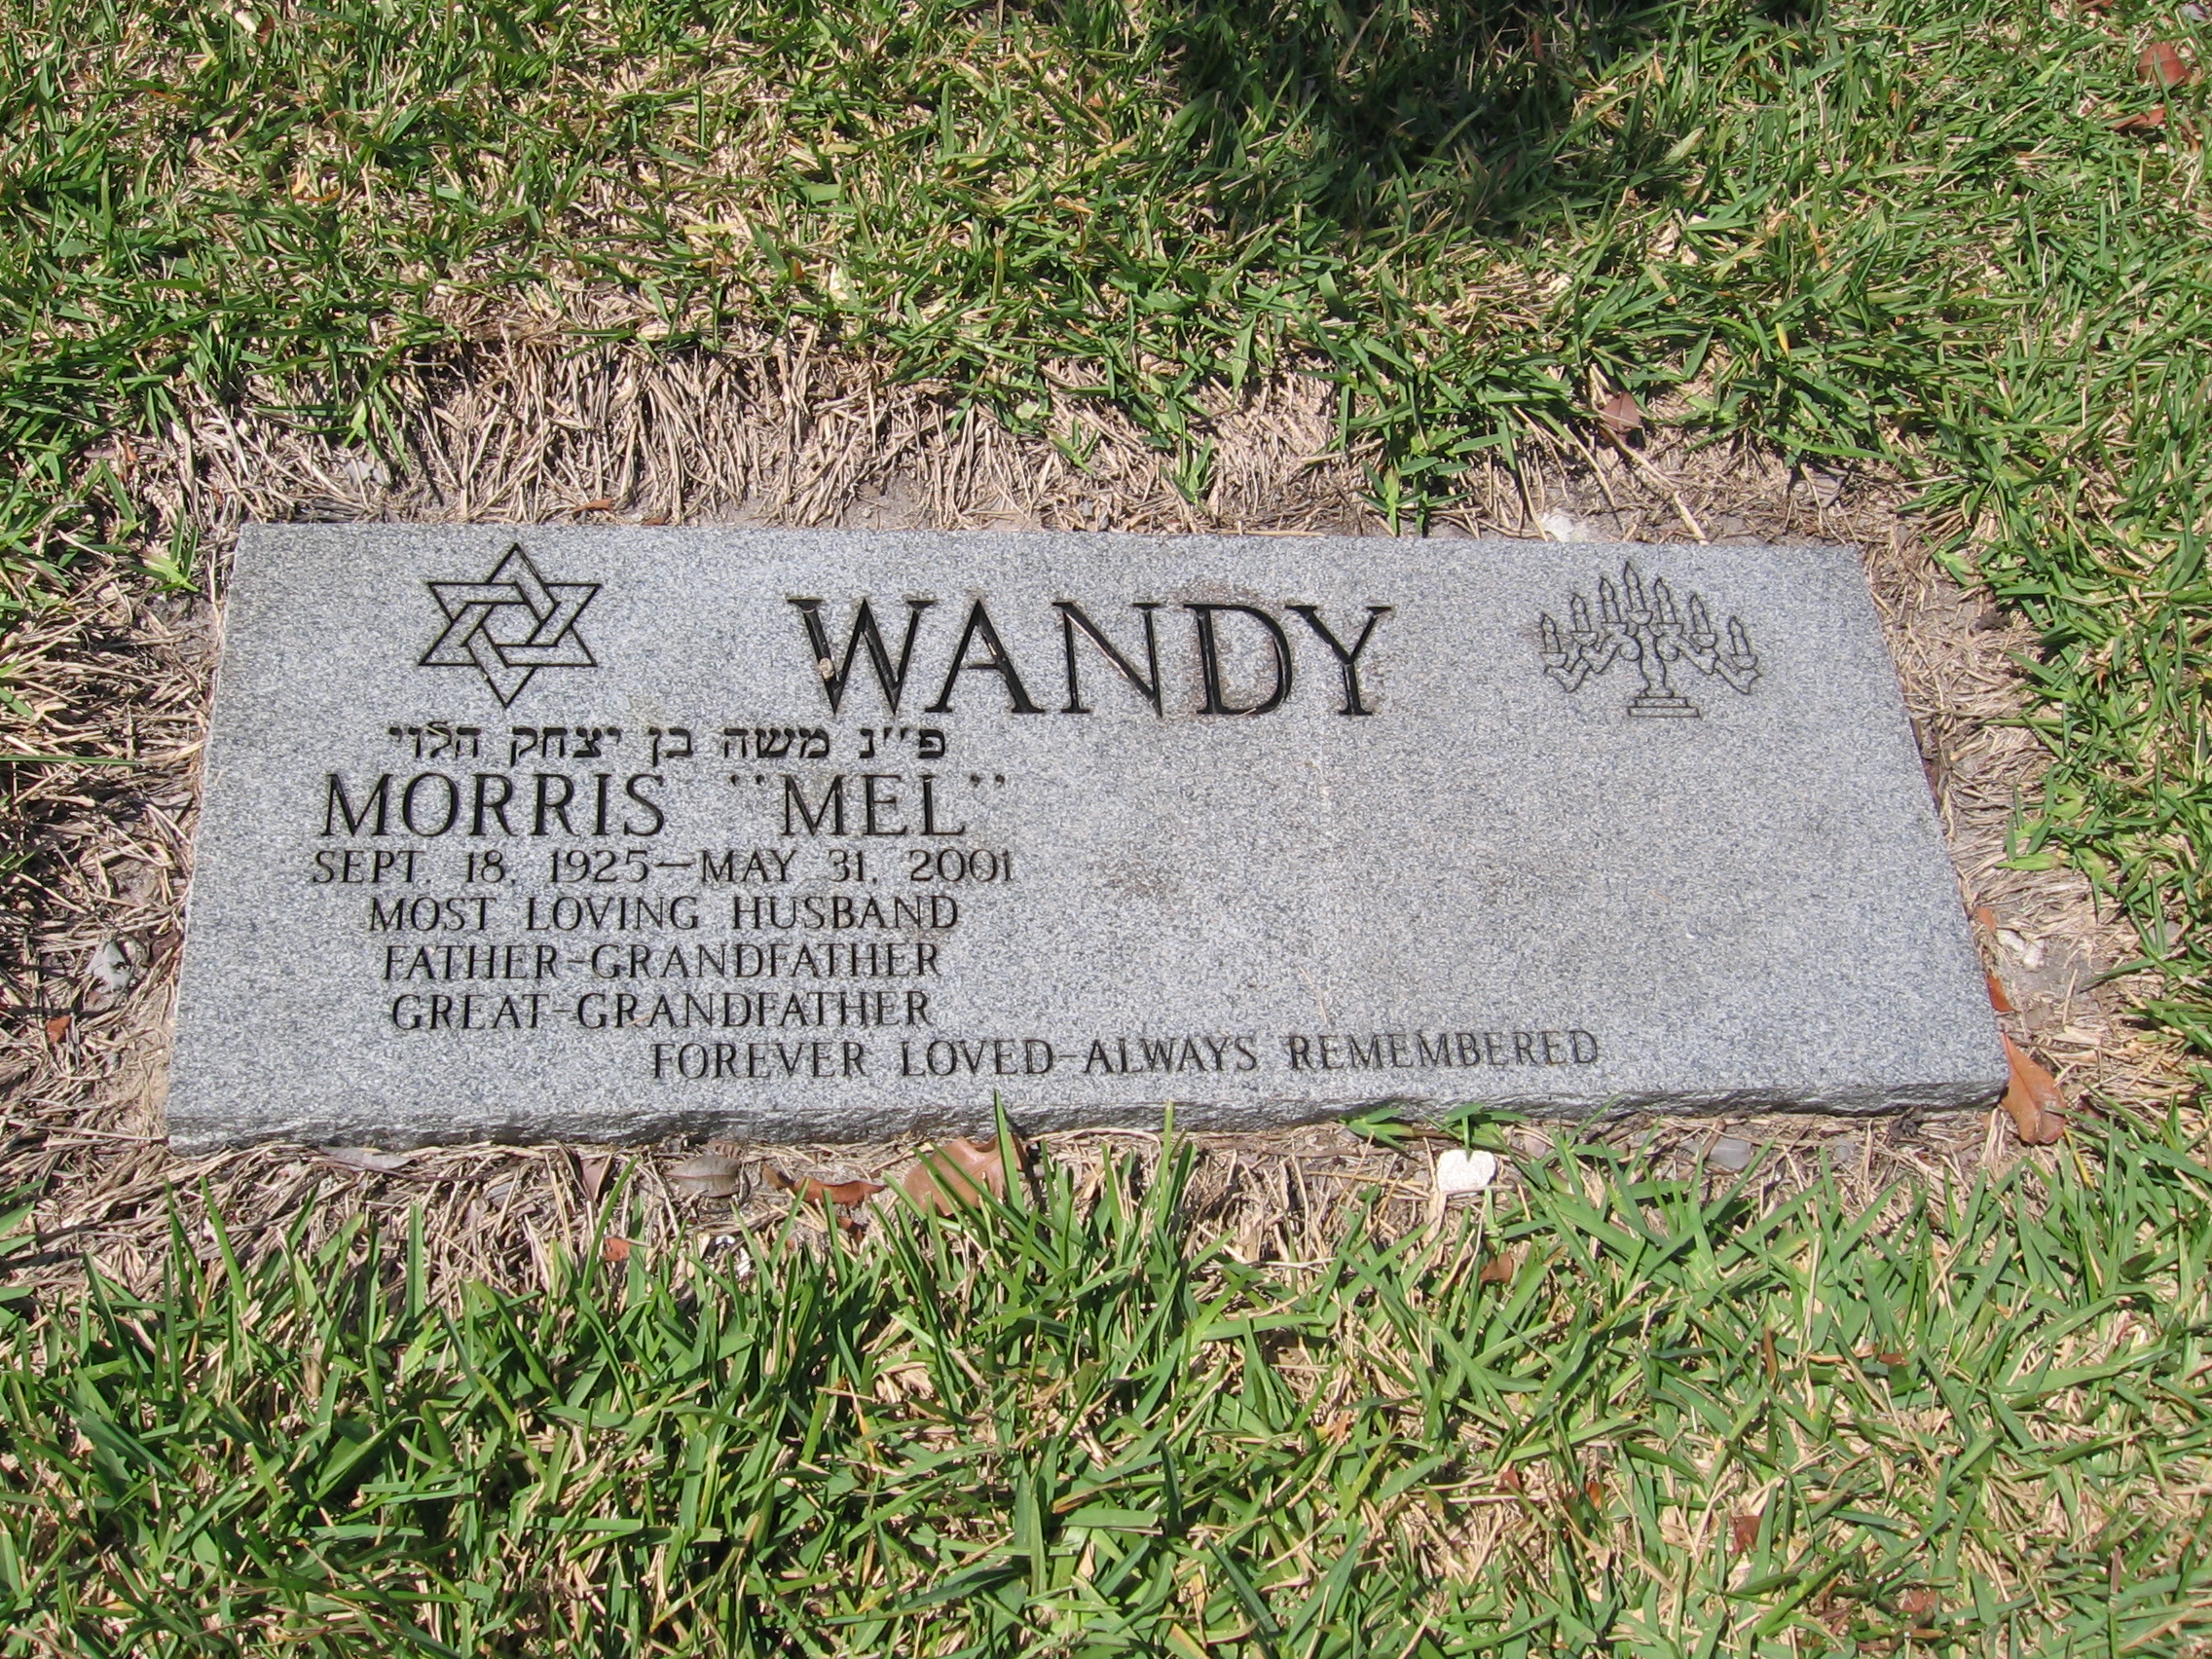 Morris "Mel" Wandy